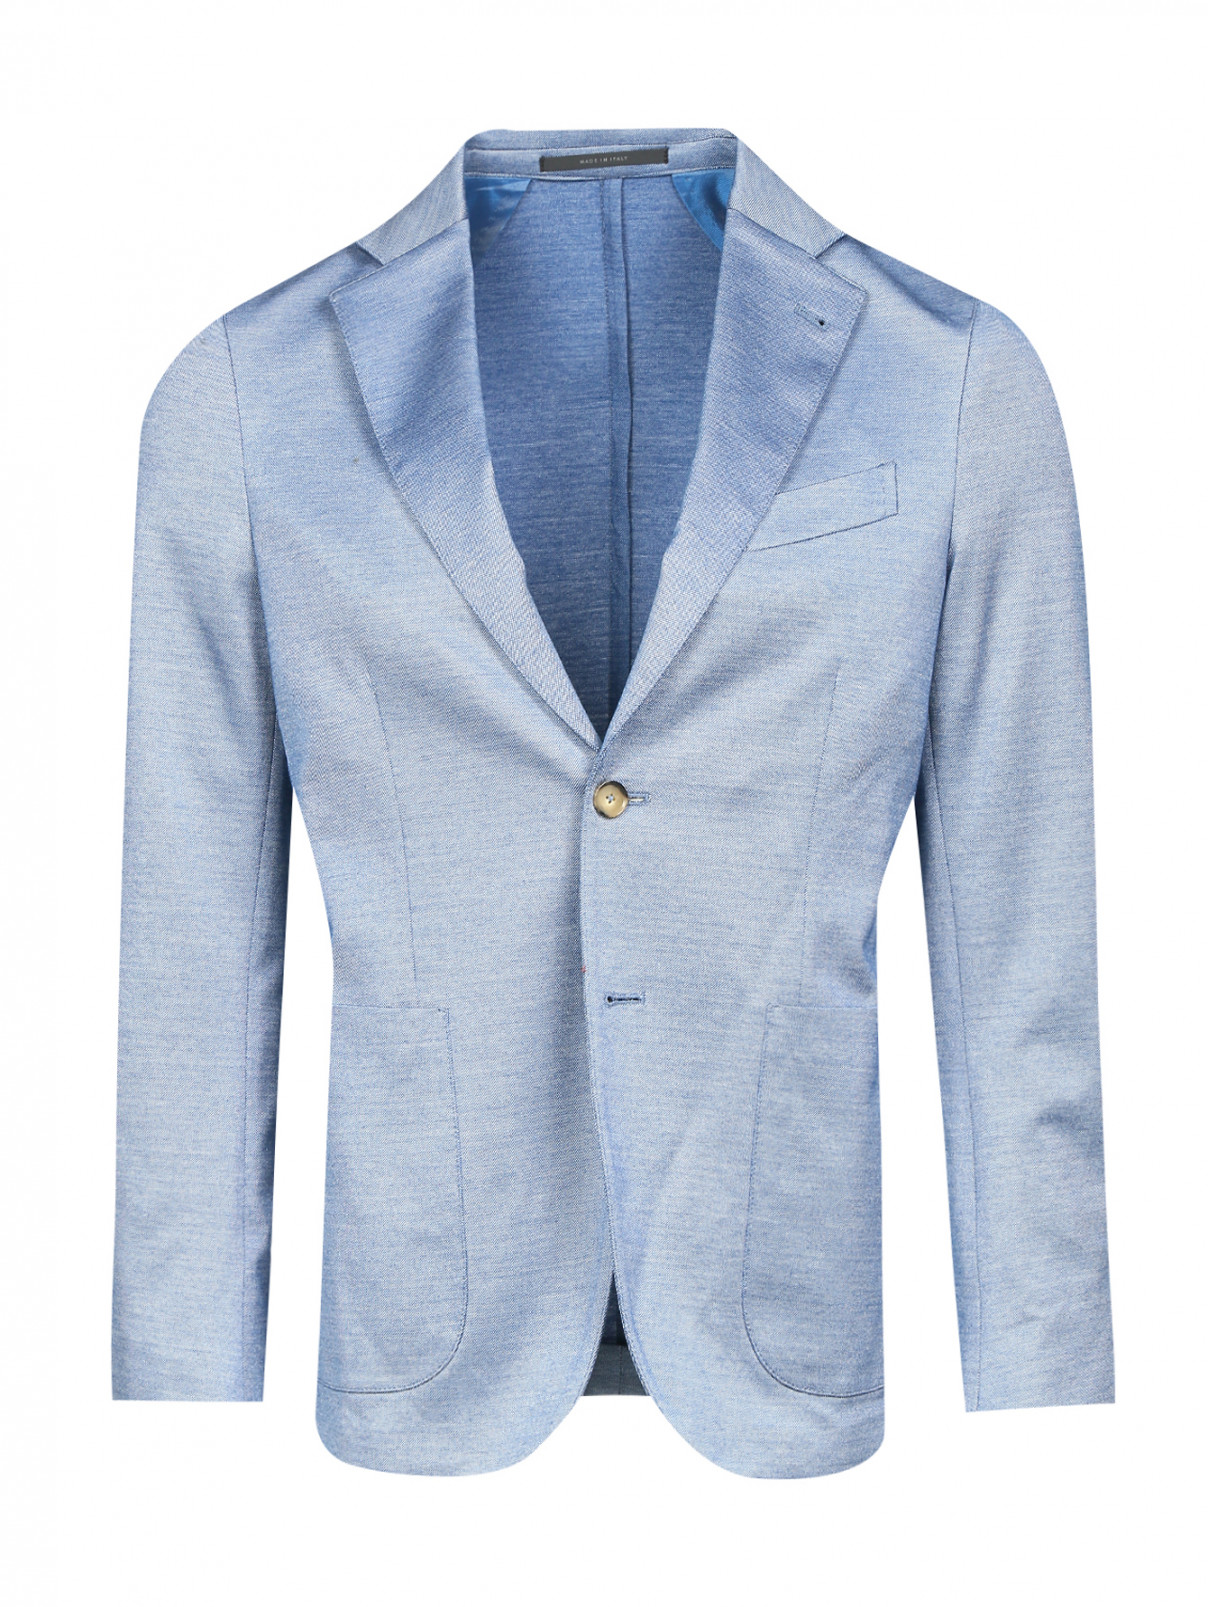 Пиджак однобортный из хлопка Pal Zileri  –  Общий вид  – Цвет:  Синий